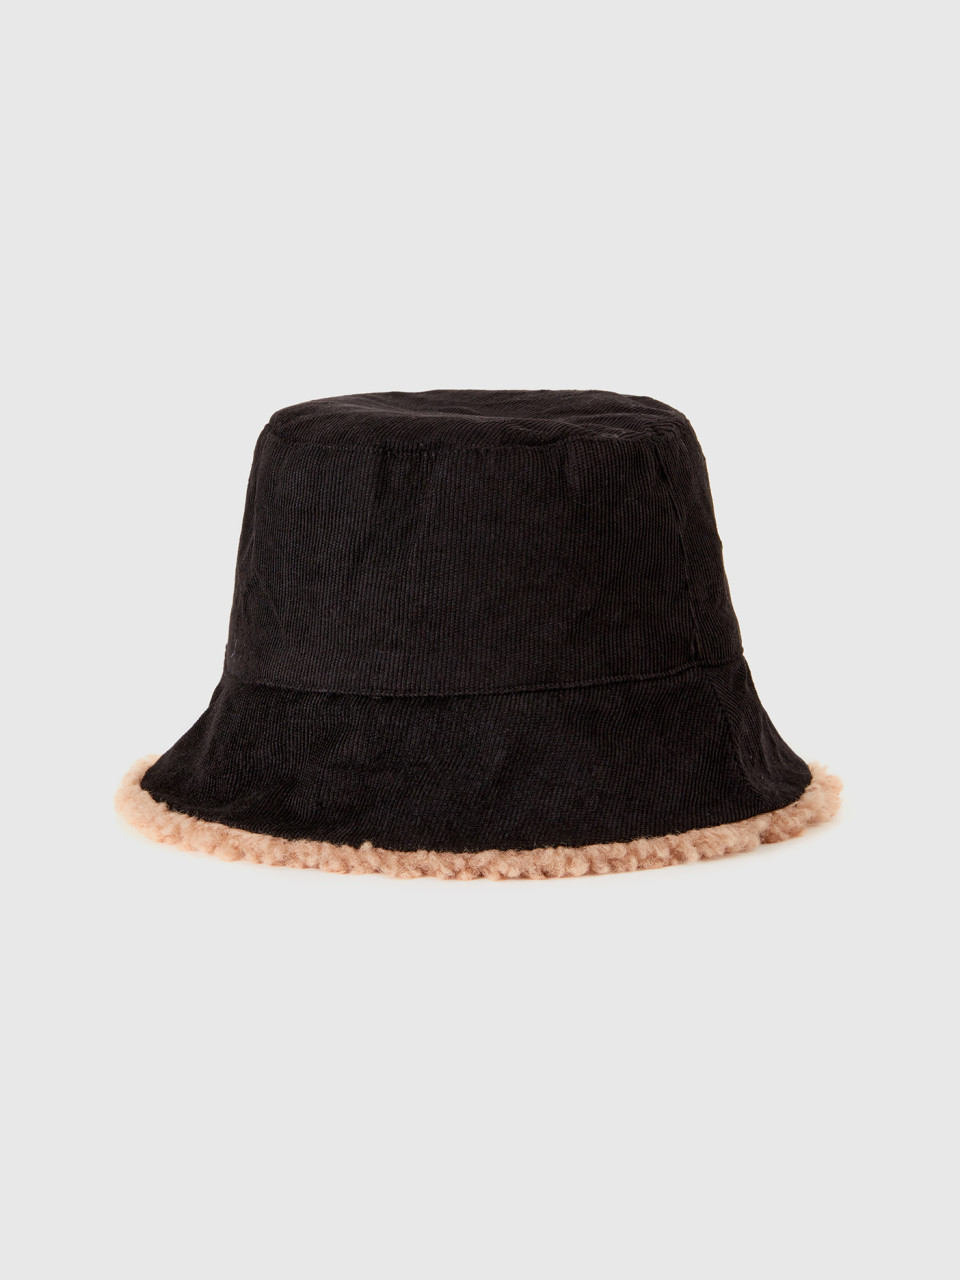 Benetton, Reversible Bucket Hat, Brown, Women